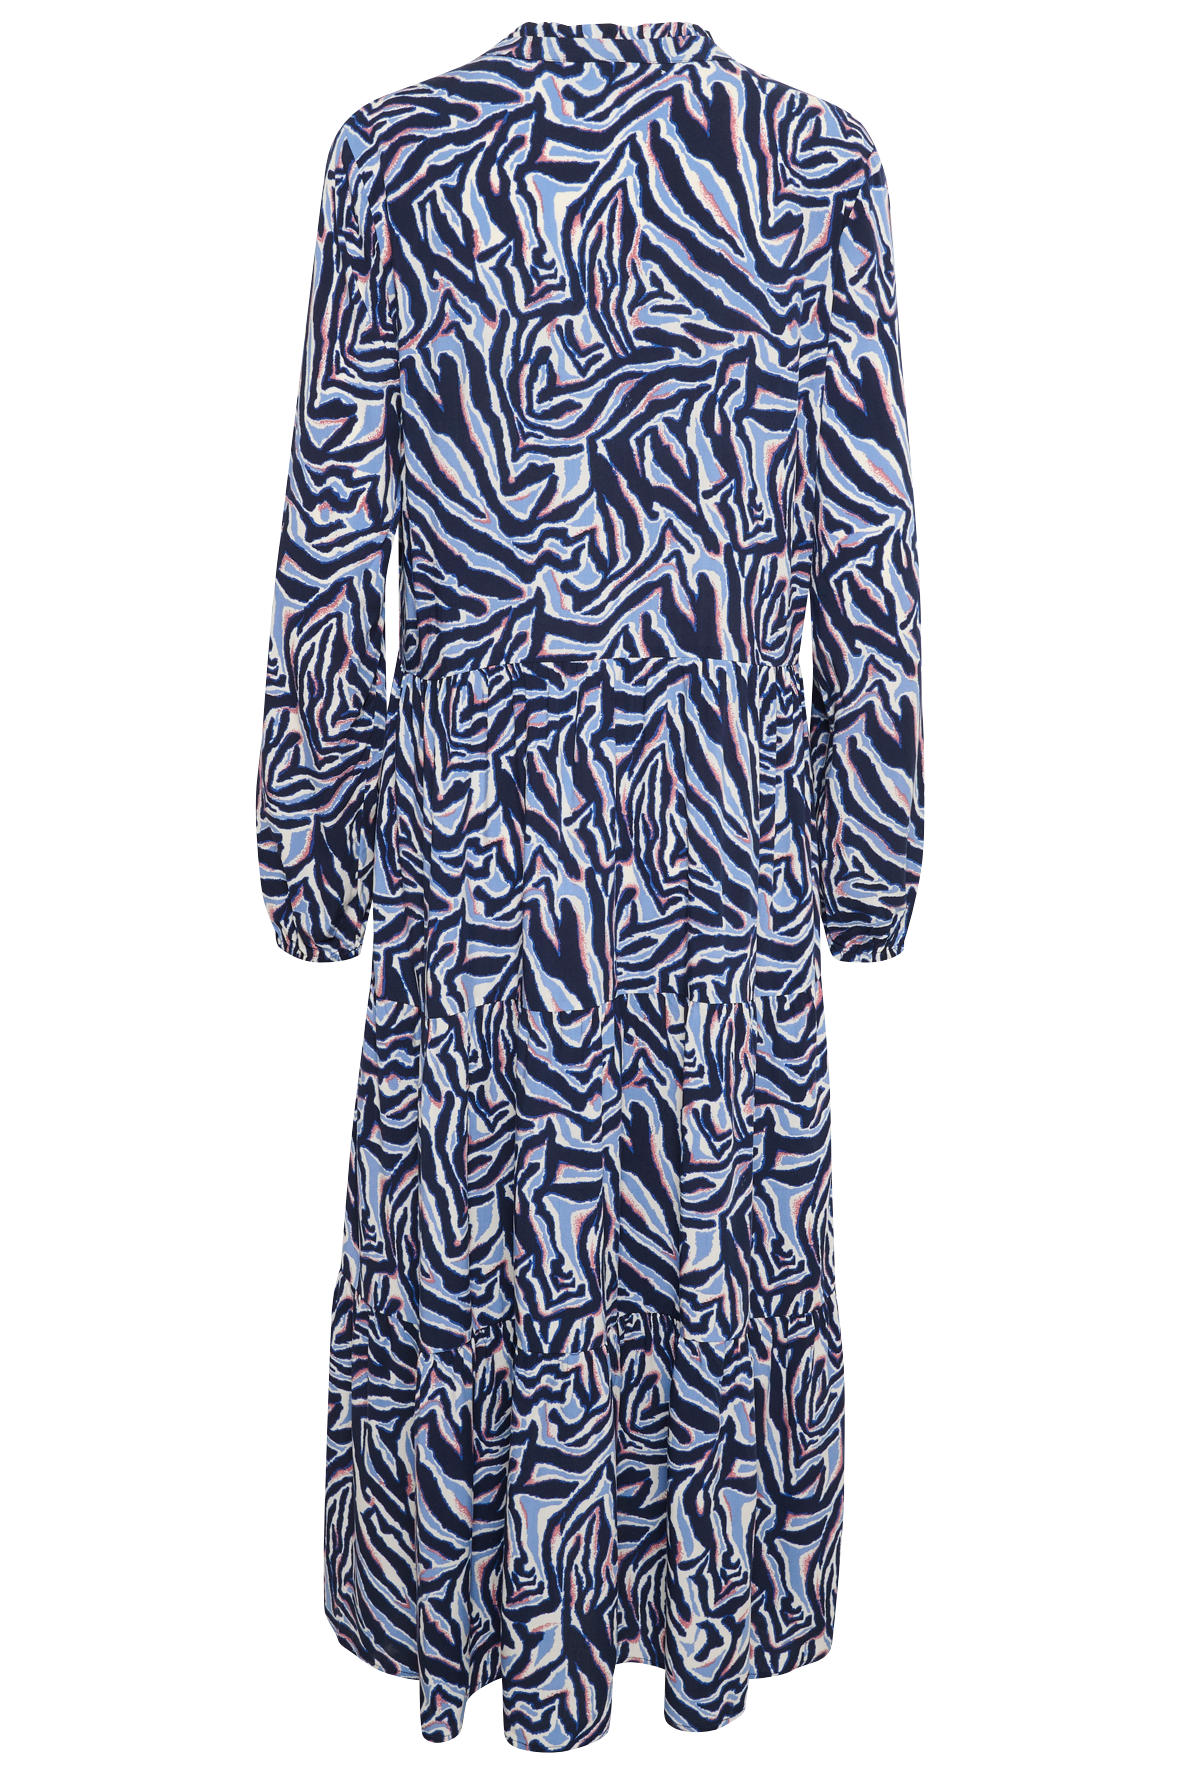 Tropez EdaSZ maxi kjole med flot blåmønstret print - Hos